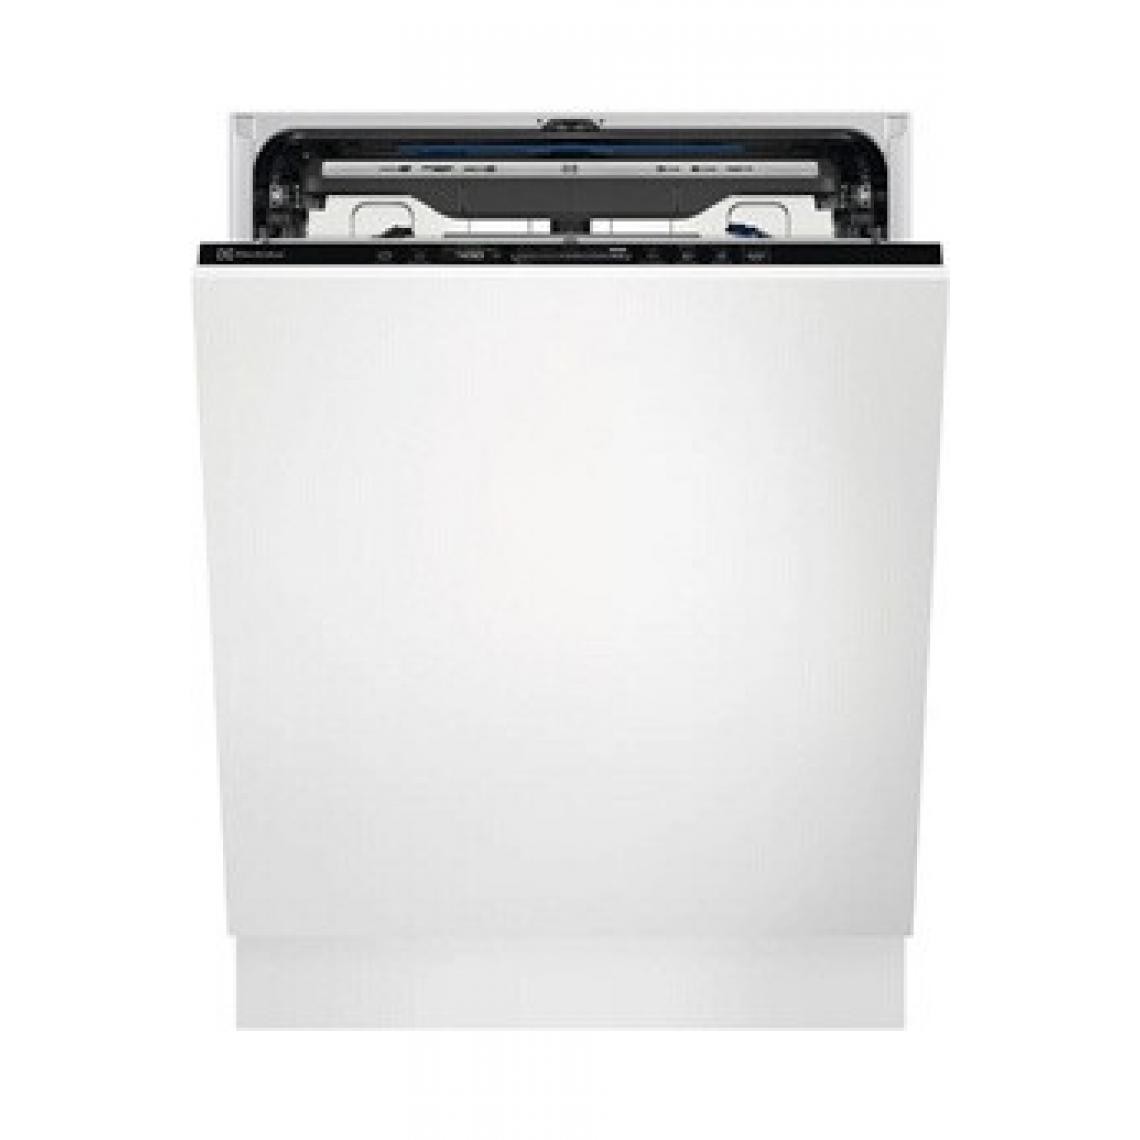 Electrolux - Lave vaisselle Electrolux EEM69310L - Lave-vaisselle